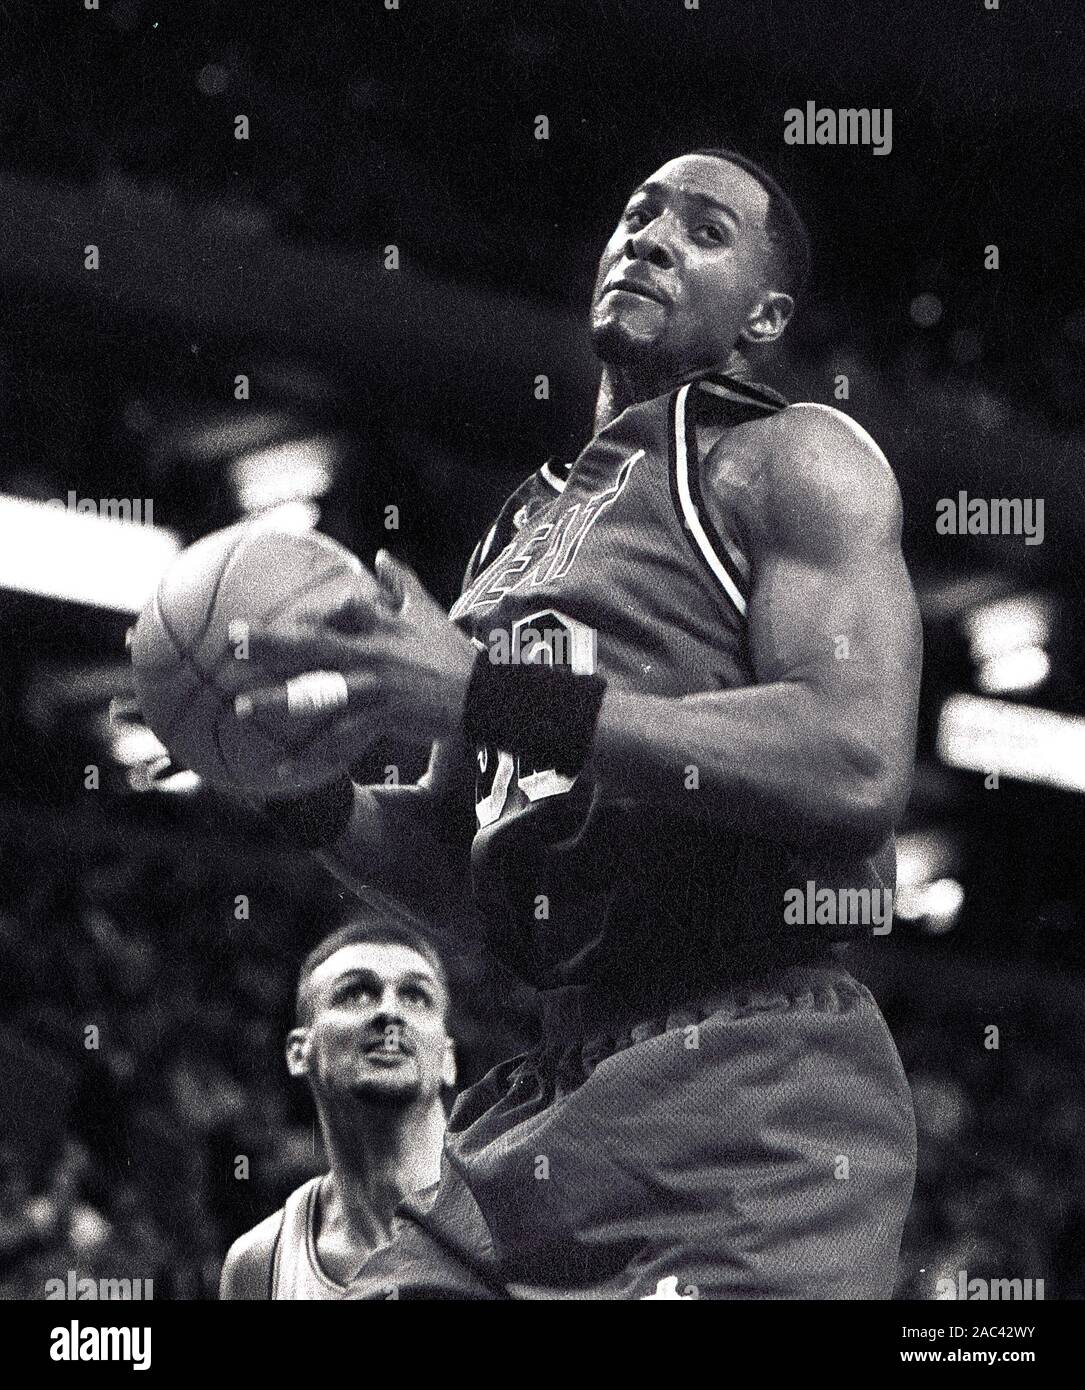 Miami Heat #33 Alonzo Mourning im Basketball Spiel gegen die Boston Celtics im Fleet Center in Boston, Ma USA mar 26,1998 Foto von Bill belknap Stockfoto